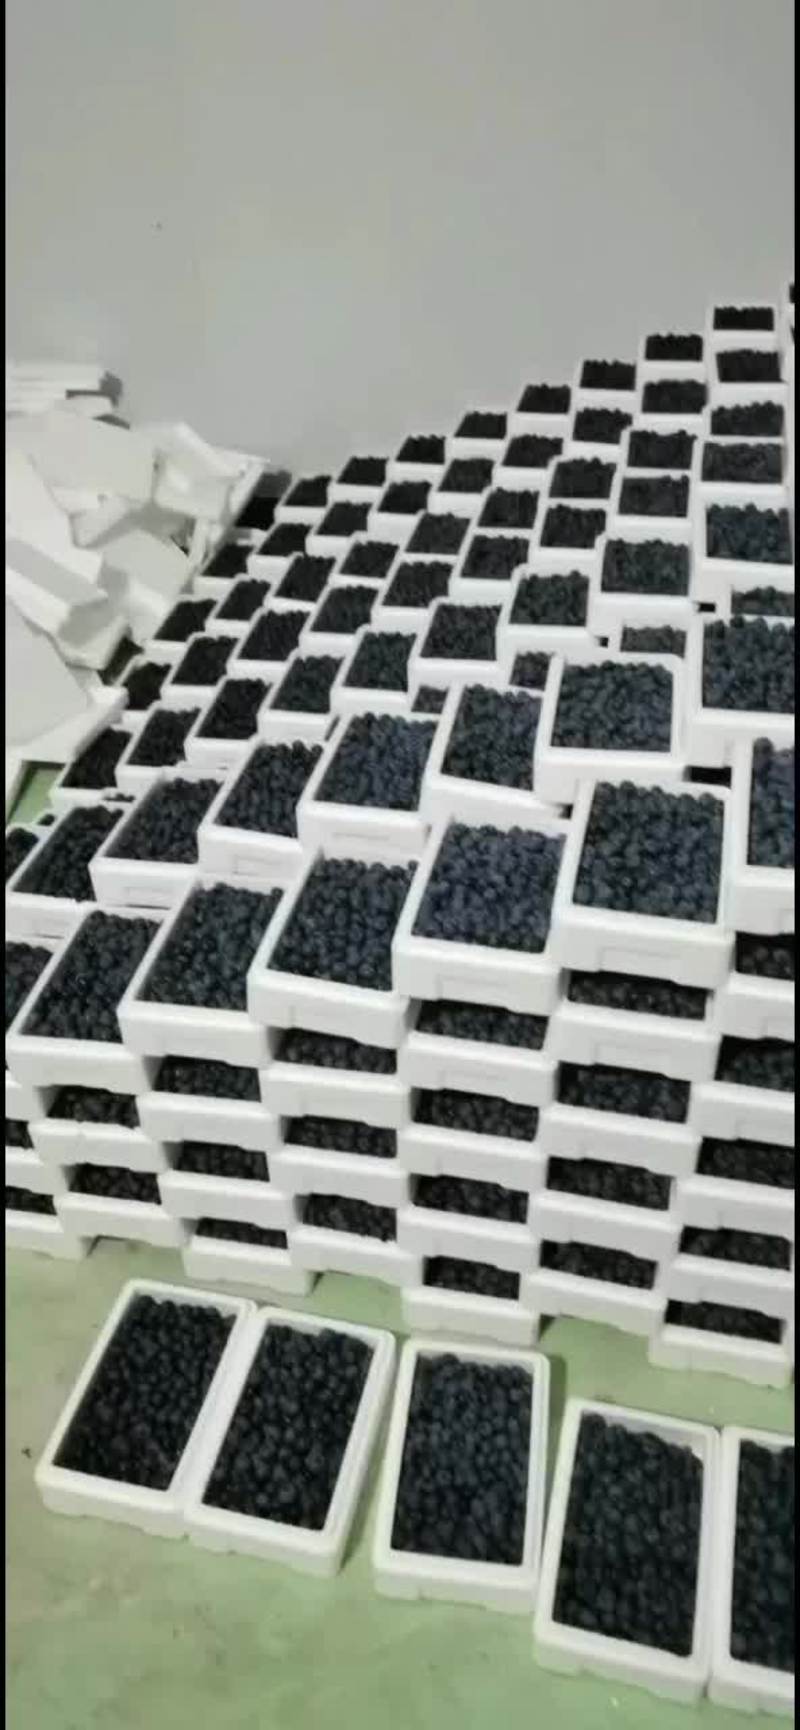 蓝莓粒果串果叶果成熟了优瑞卡,L25,北路公爵，蓝峰等